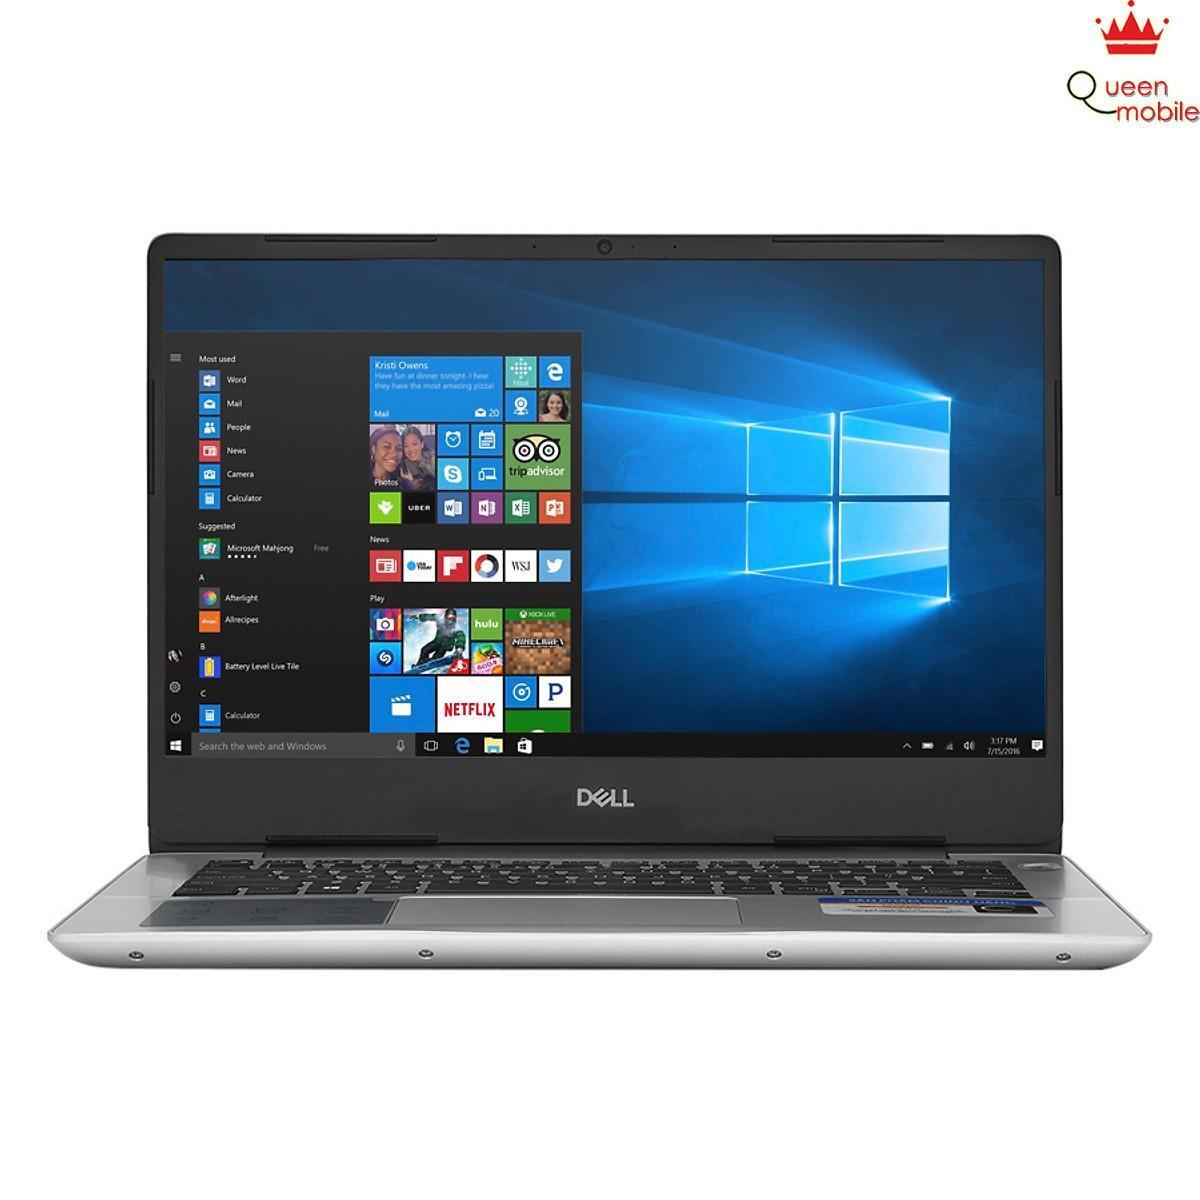 Laptop Dell Inspiron 5480 70169218 - Intel core i7-8565U, 8GB RAM, SSD 128GB + HDD 1TB, Nvidia GeForce MX150 2GB GDDR5, 14 inch